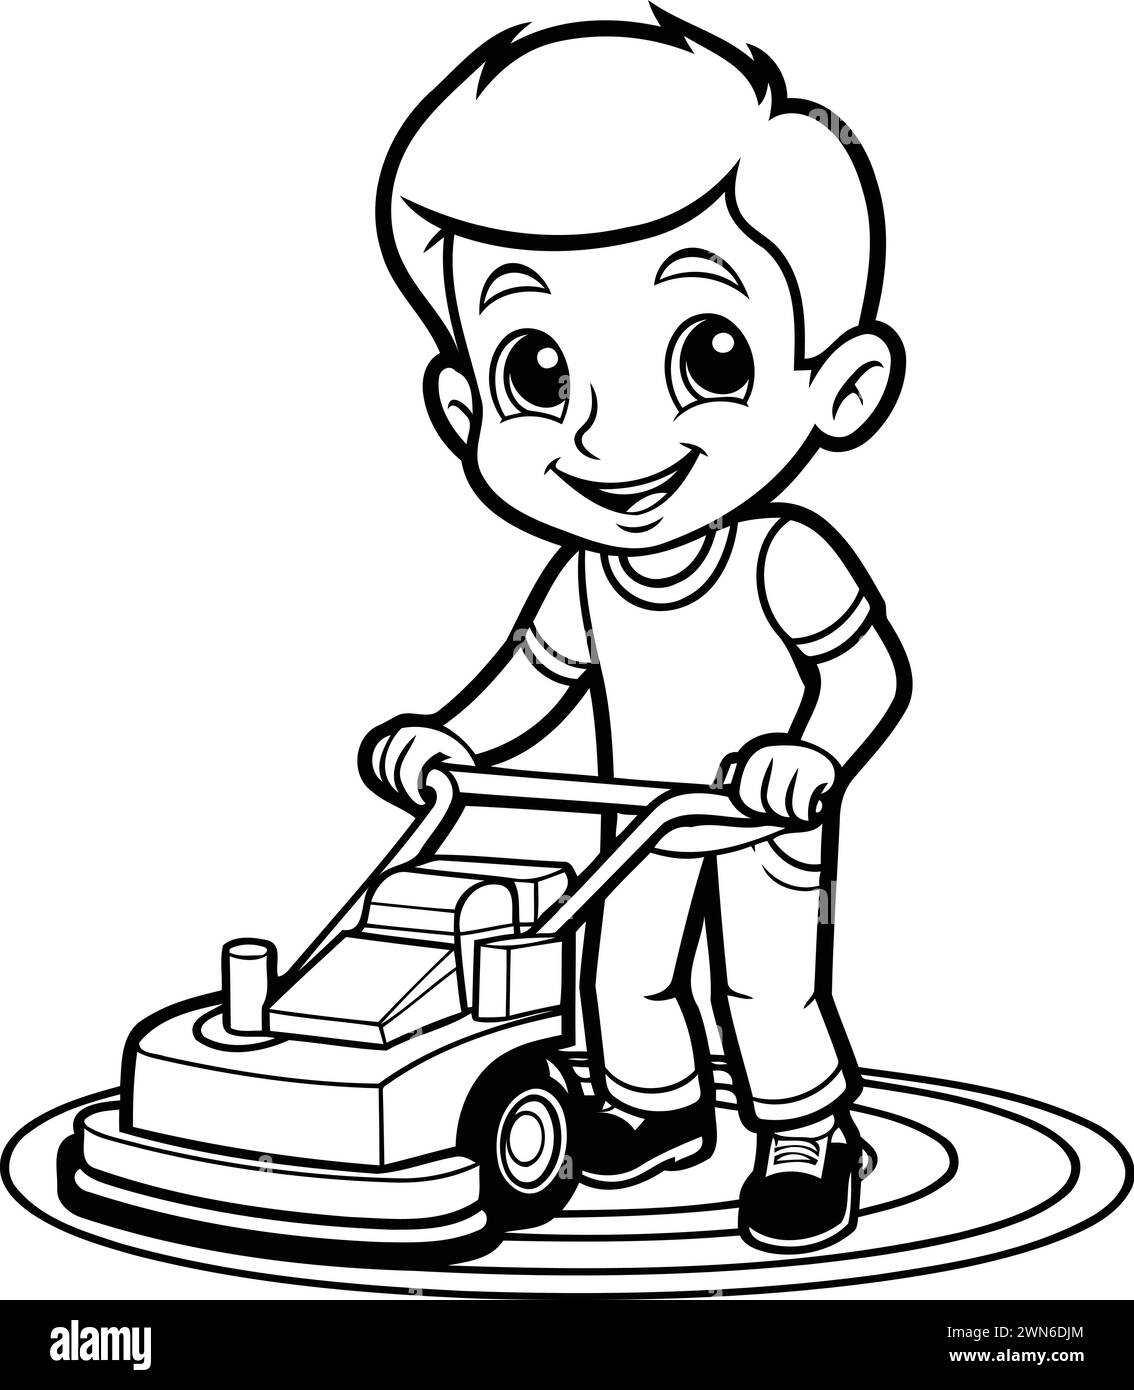 Fumetto bianco e nero illustrazione del bambino che gioca a Toy Car o tosaerba per colorare il libro Illustrazione Vettoriale